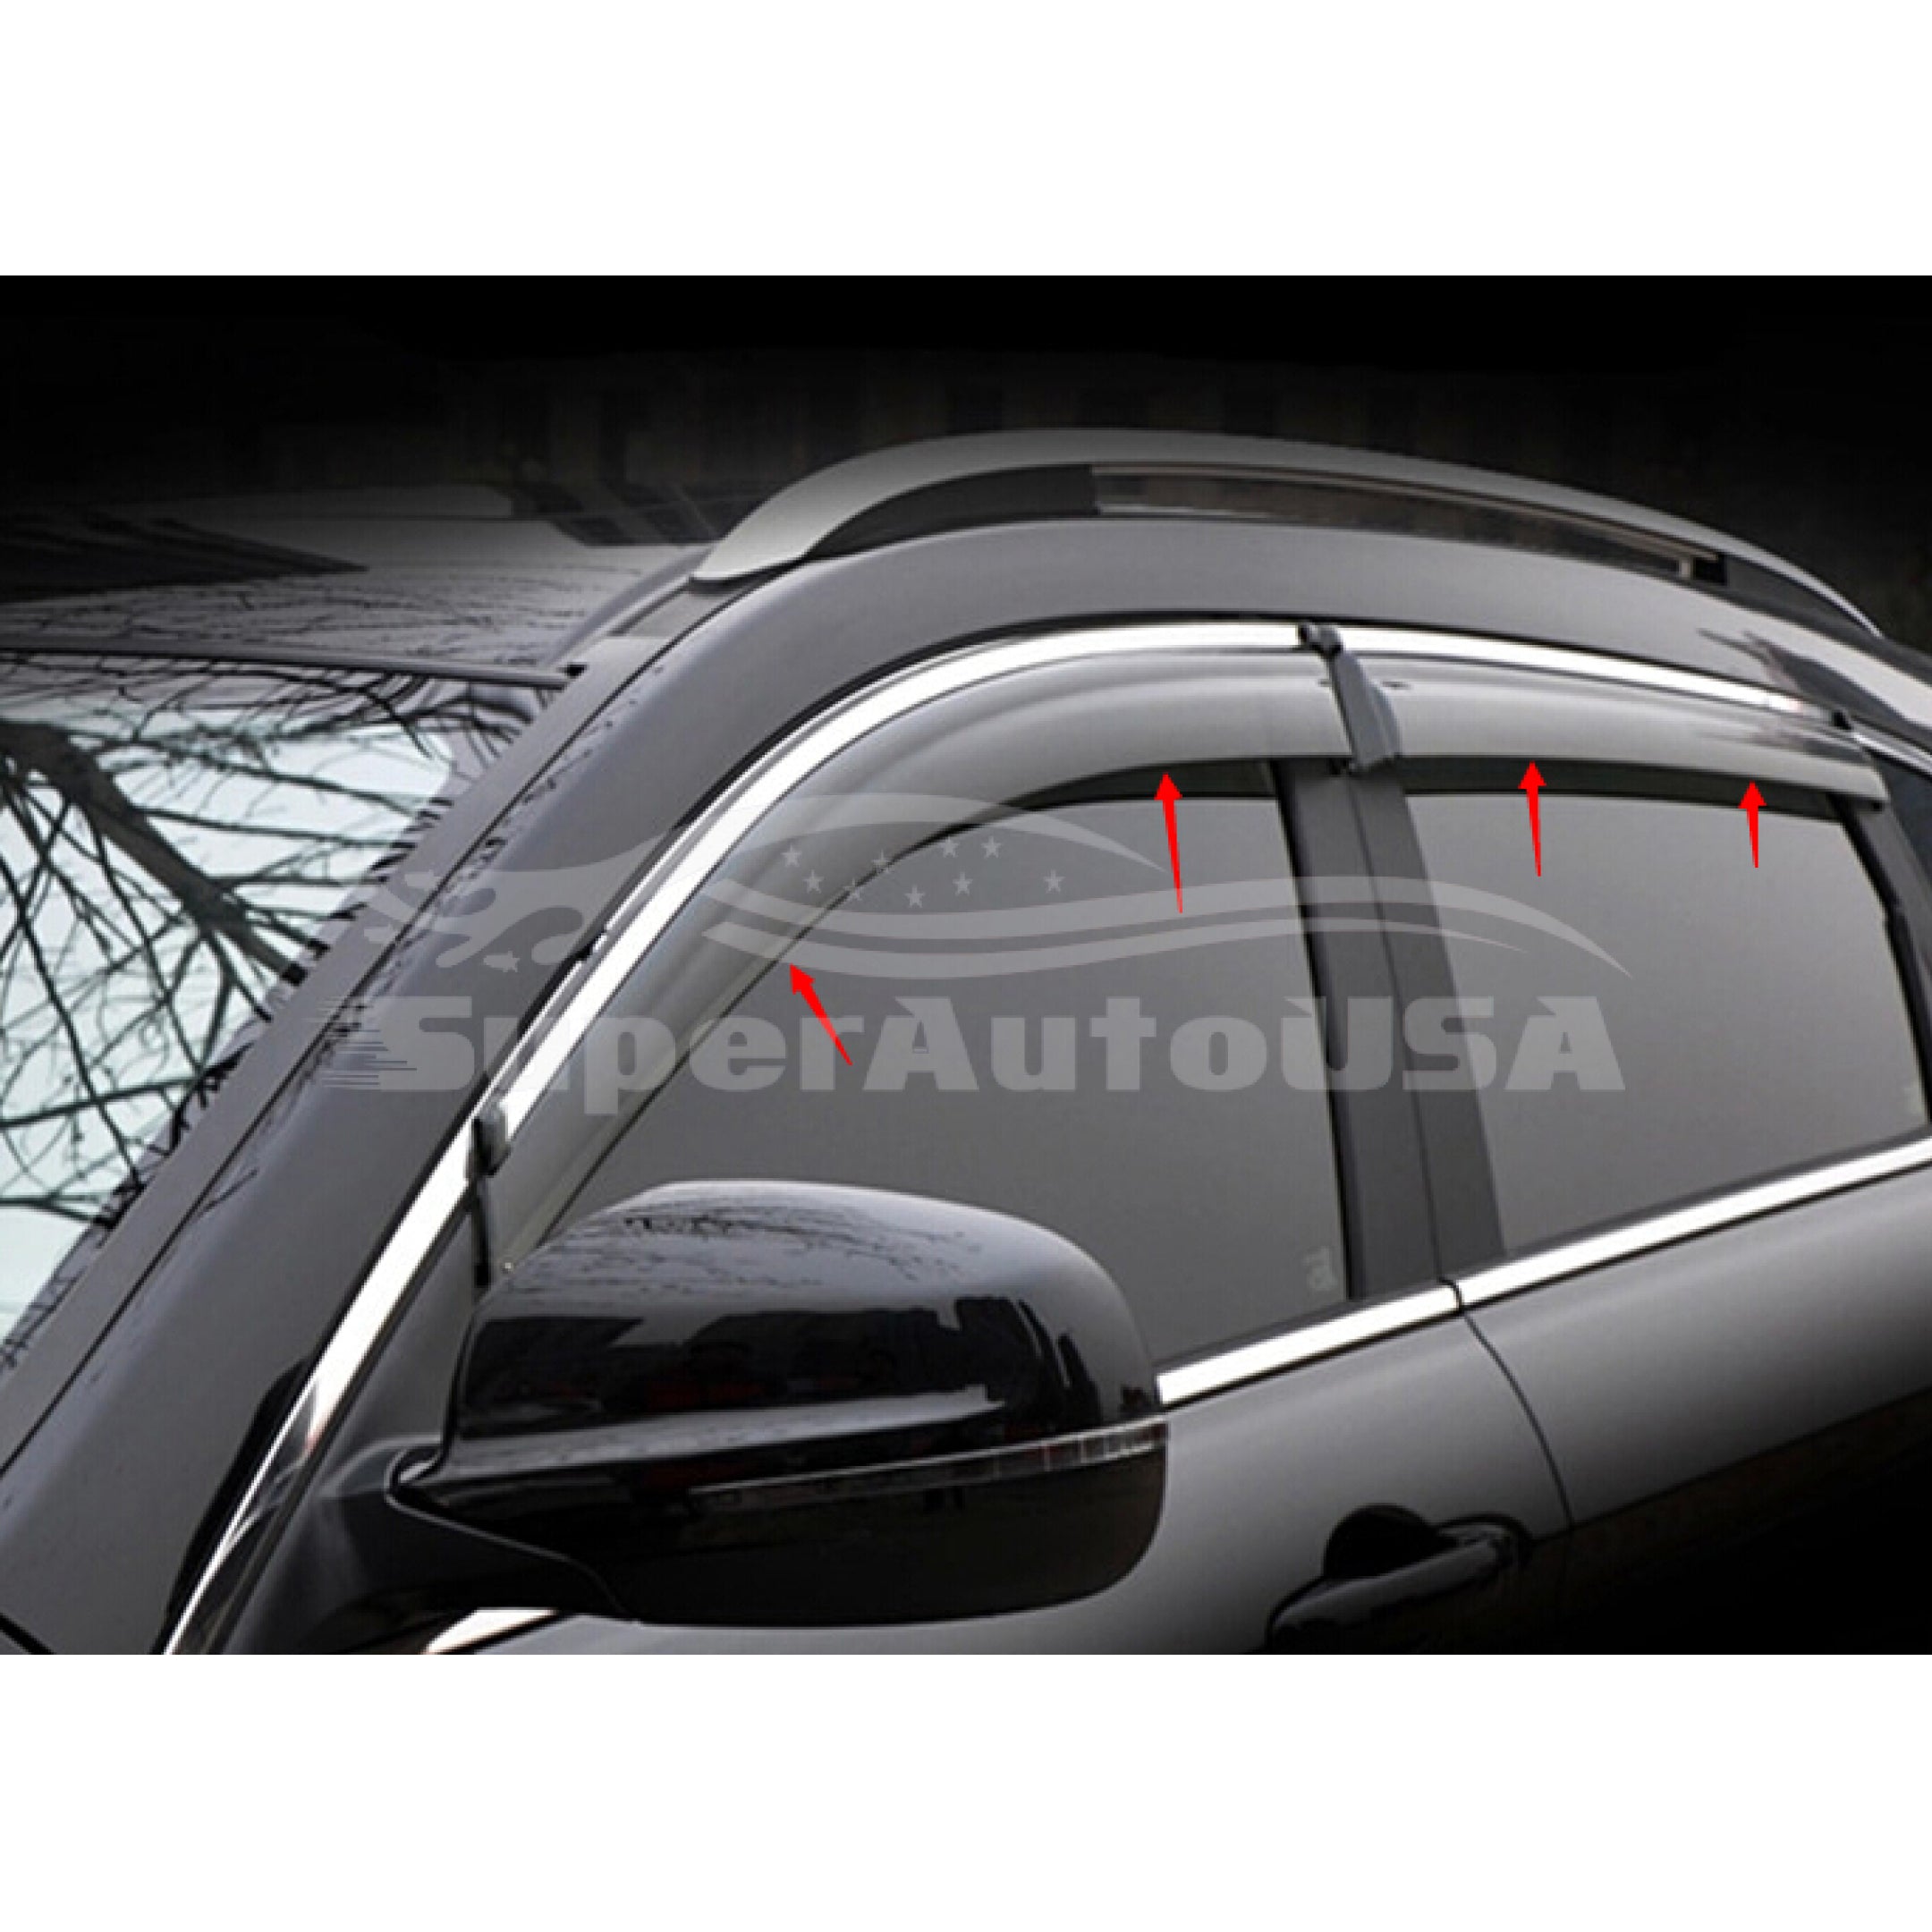 Ajuste 2019-2022 Nissan Altima Clip-On Chrome Trim Vent Window Viseras Rain Sun Wind Guards Shade Deflectors - 0